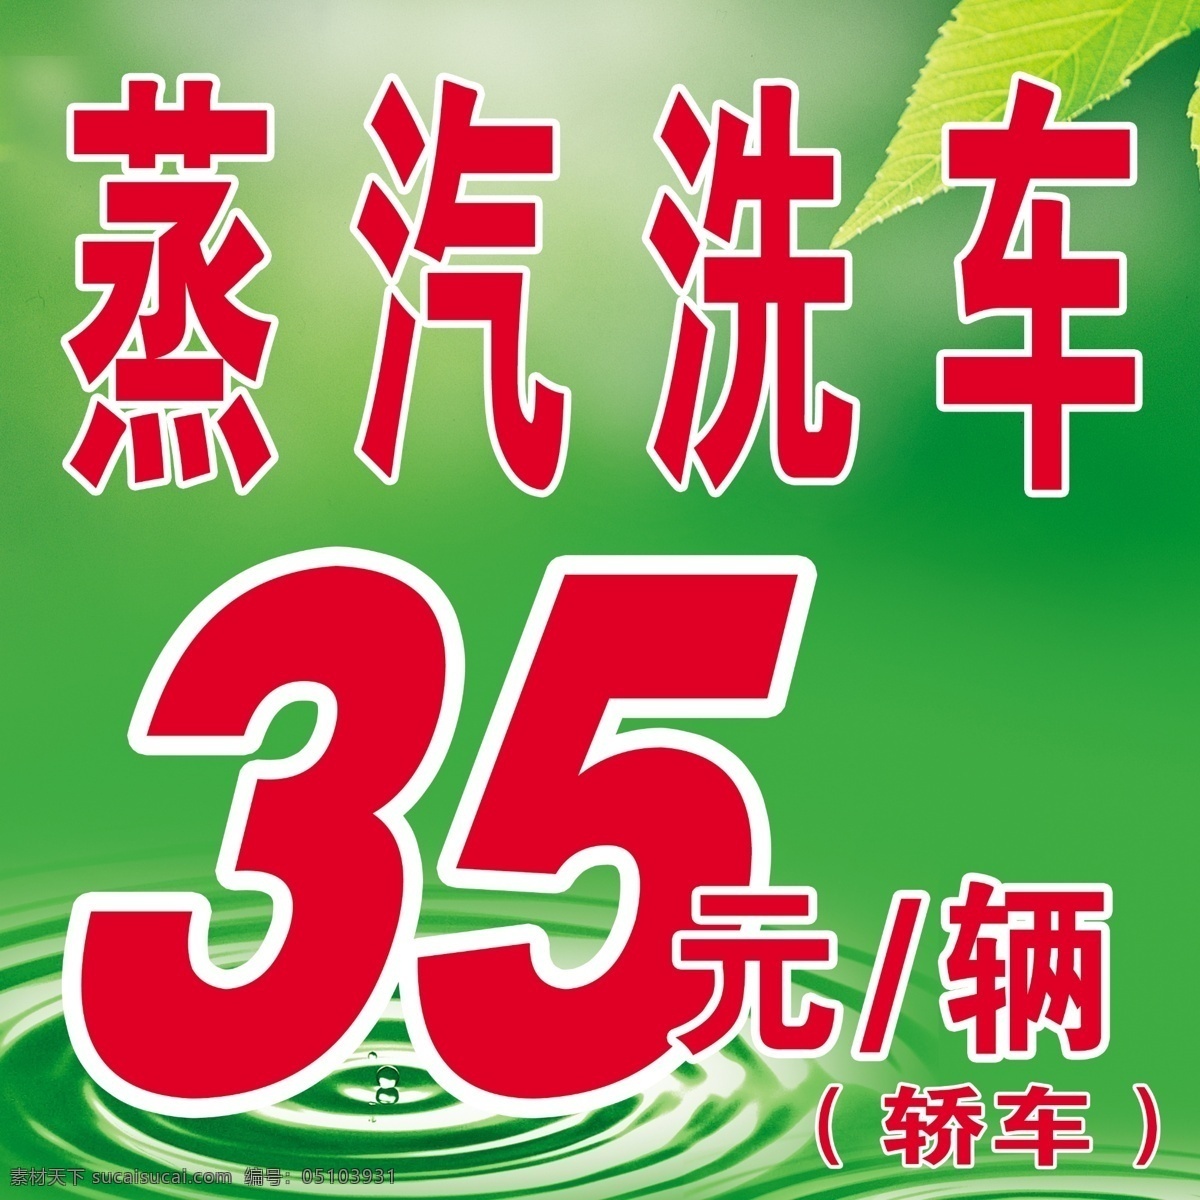 水滴绿叶 水滴 水波 绿叶 绿色背景 蒸汽洗车 其他模版 广告设计模板 源文件